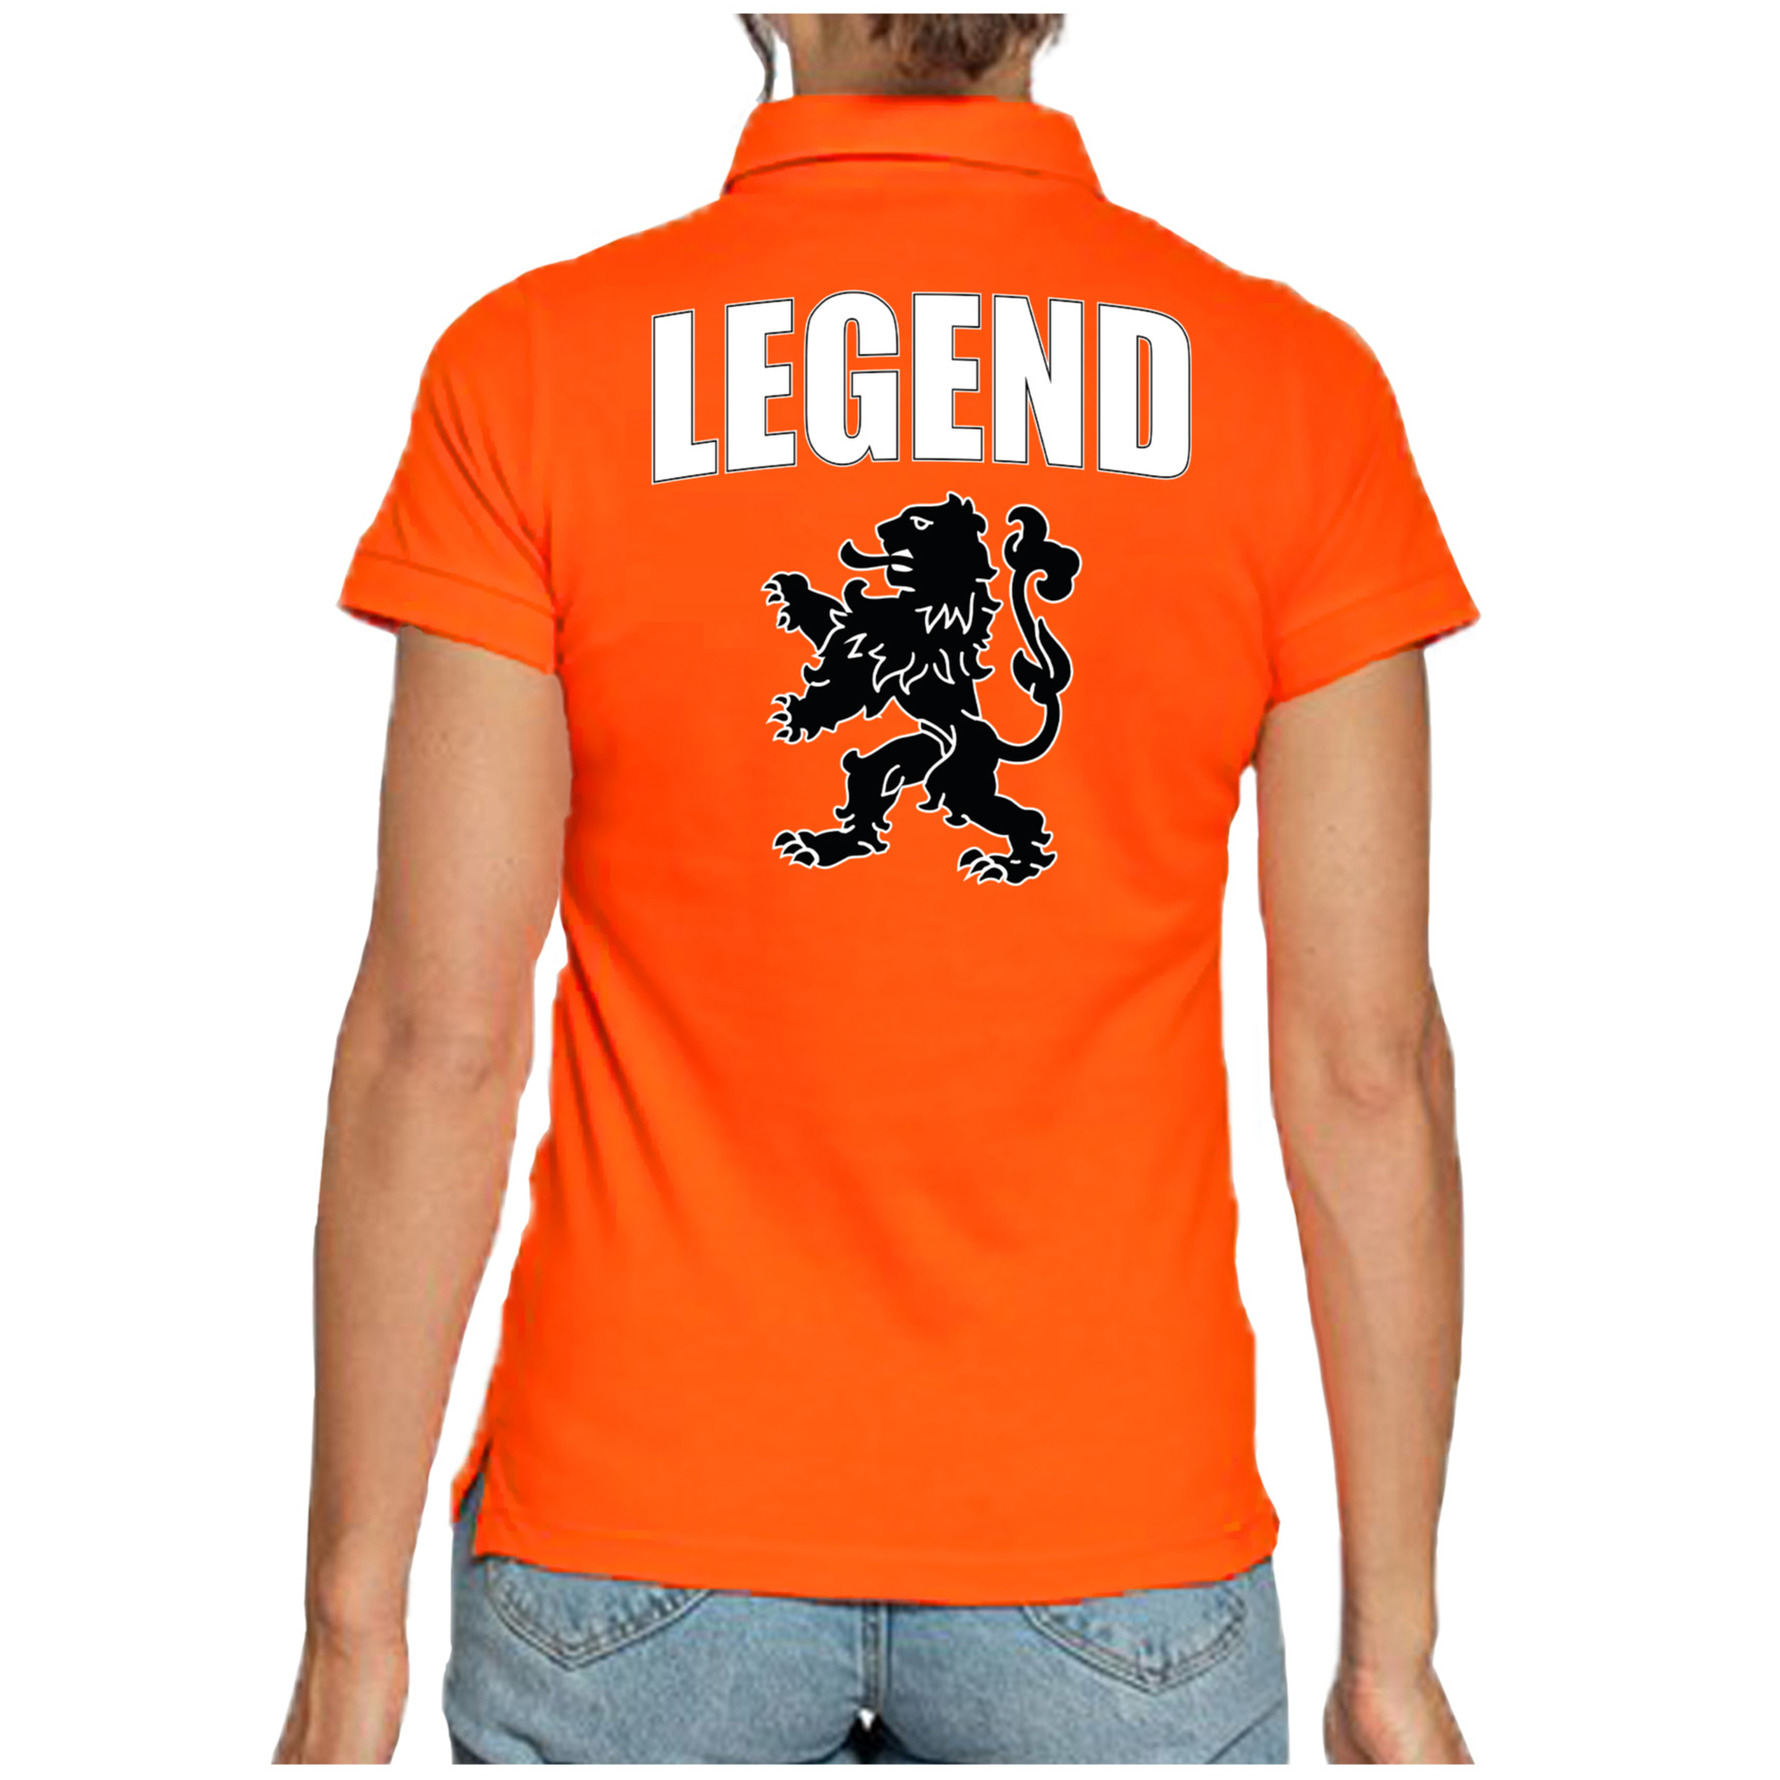 Holland fan polo t-shirt legend oranje met leeuw voor dames